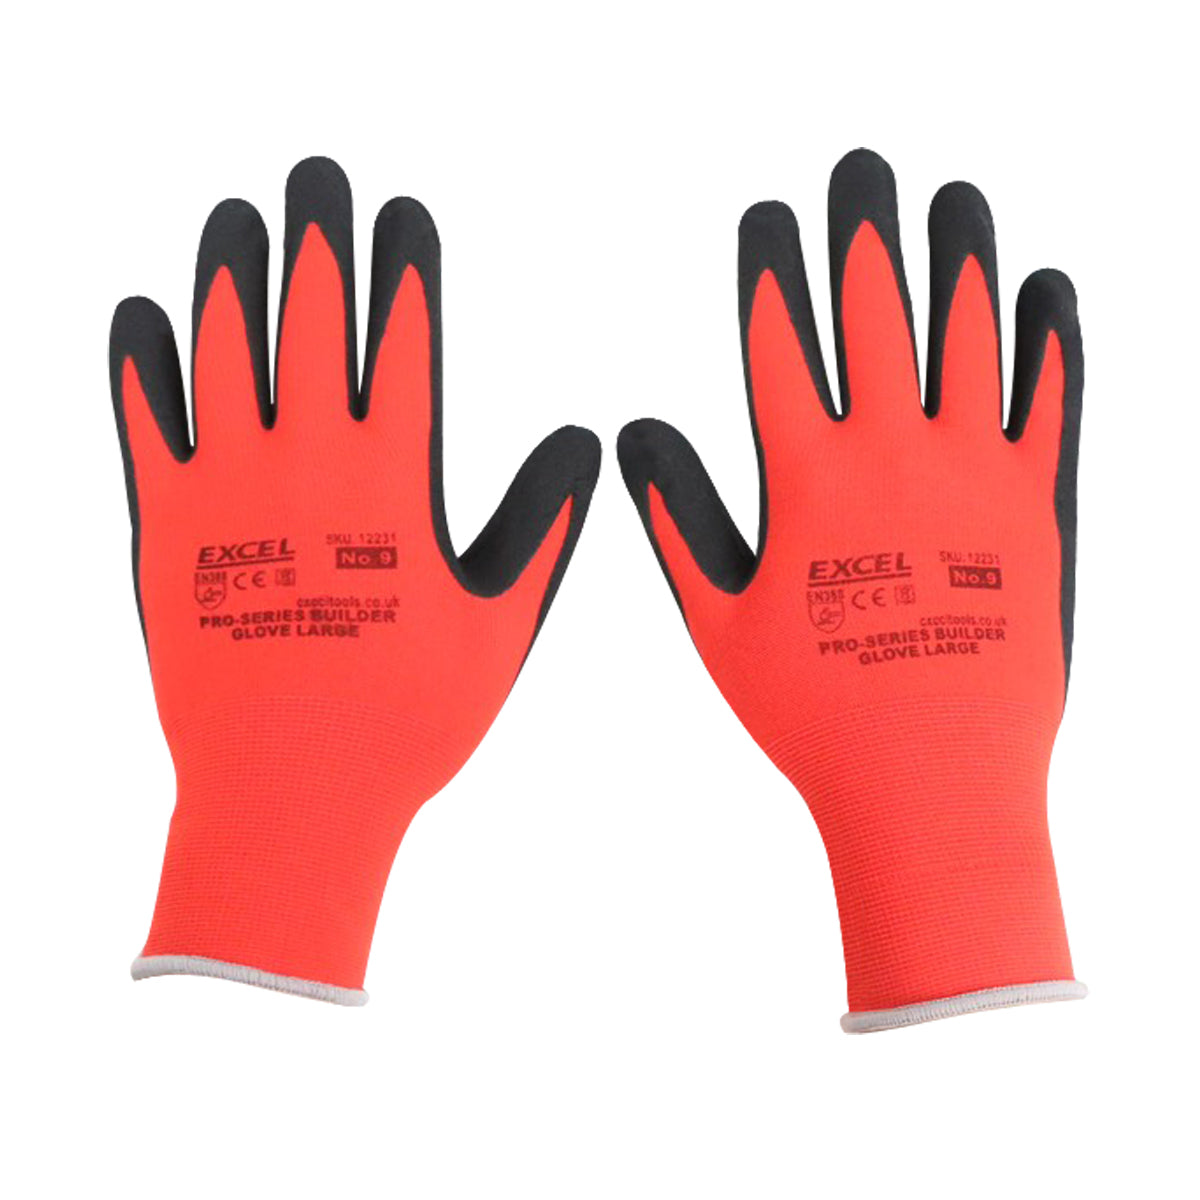 Excel Pro-Series Builder Gloves Red & Black Size L